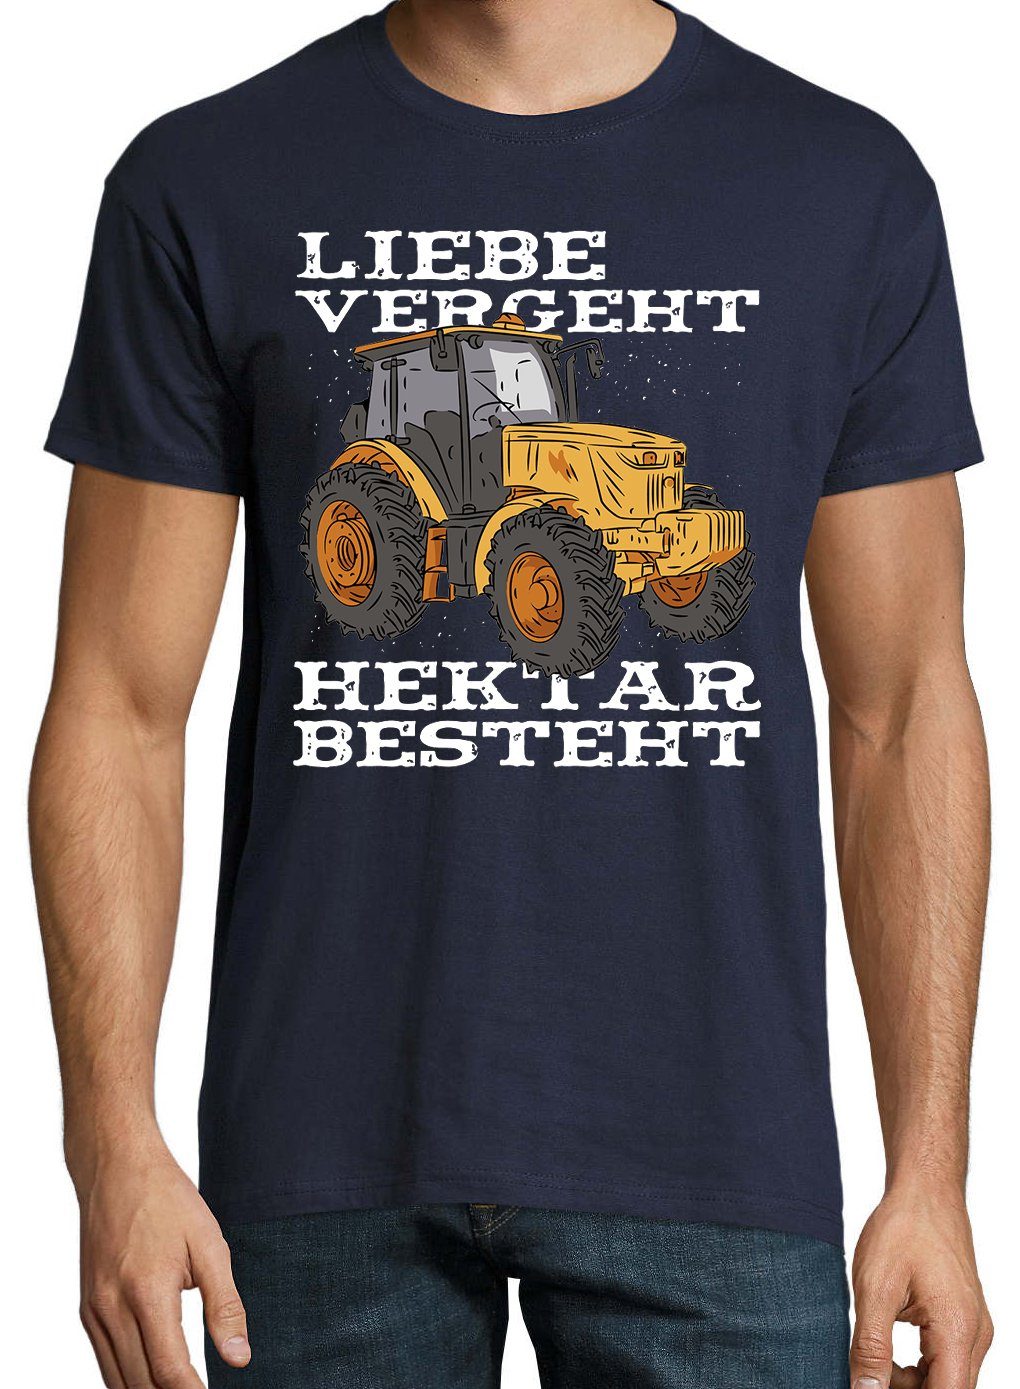 Youth Besteht" Liebe mit Herren Frontprint Designz Vergeht, T-Shirt trendigem Shirt "Liebe Navyblau